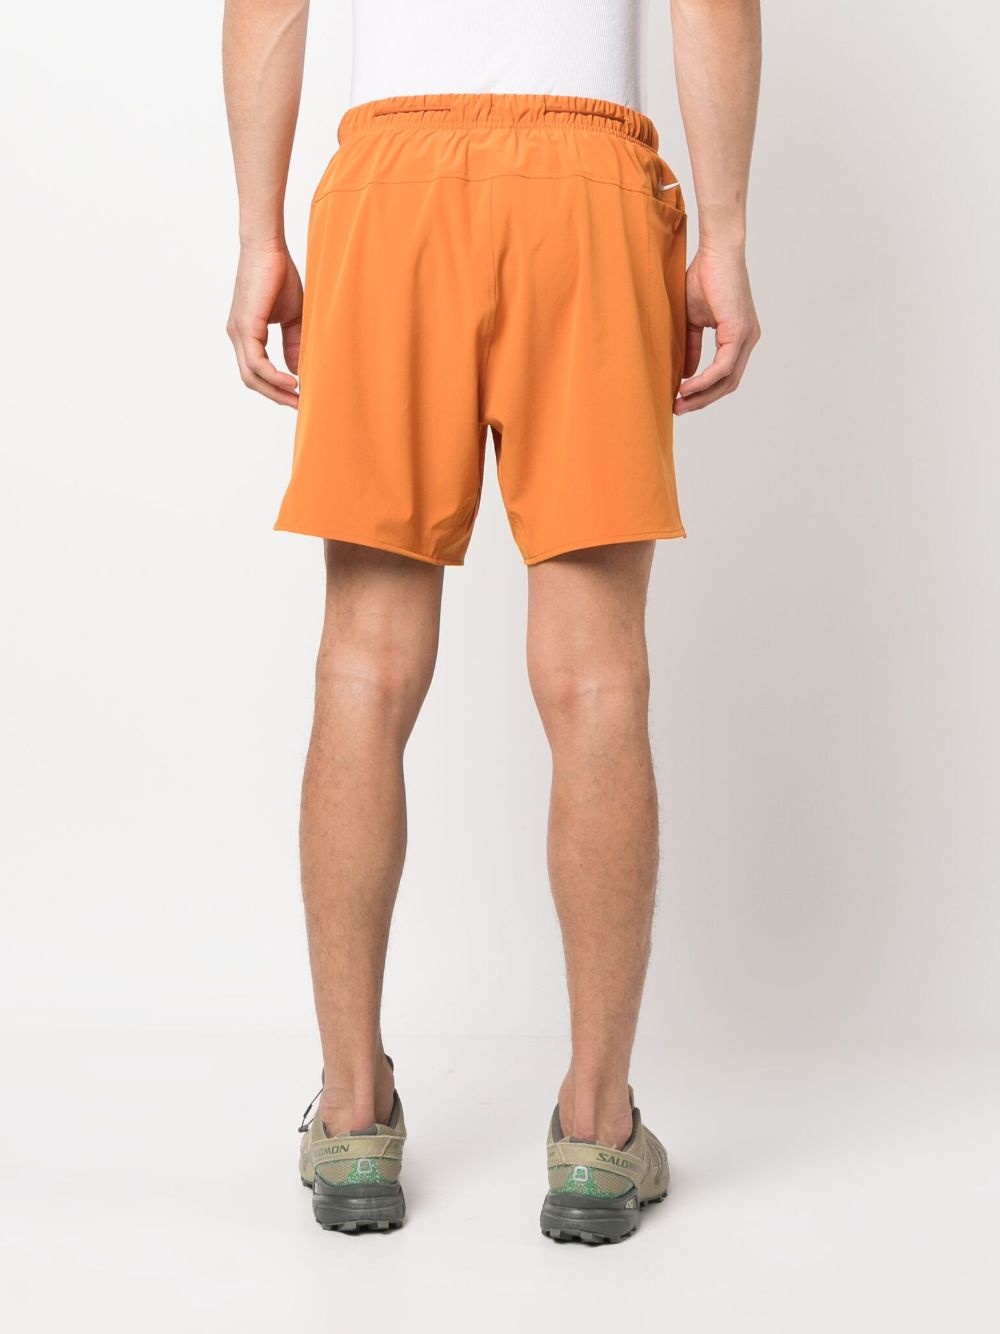 Acg dri-fit shorts - 3